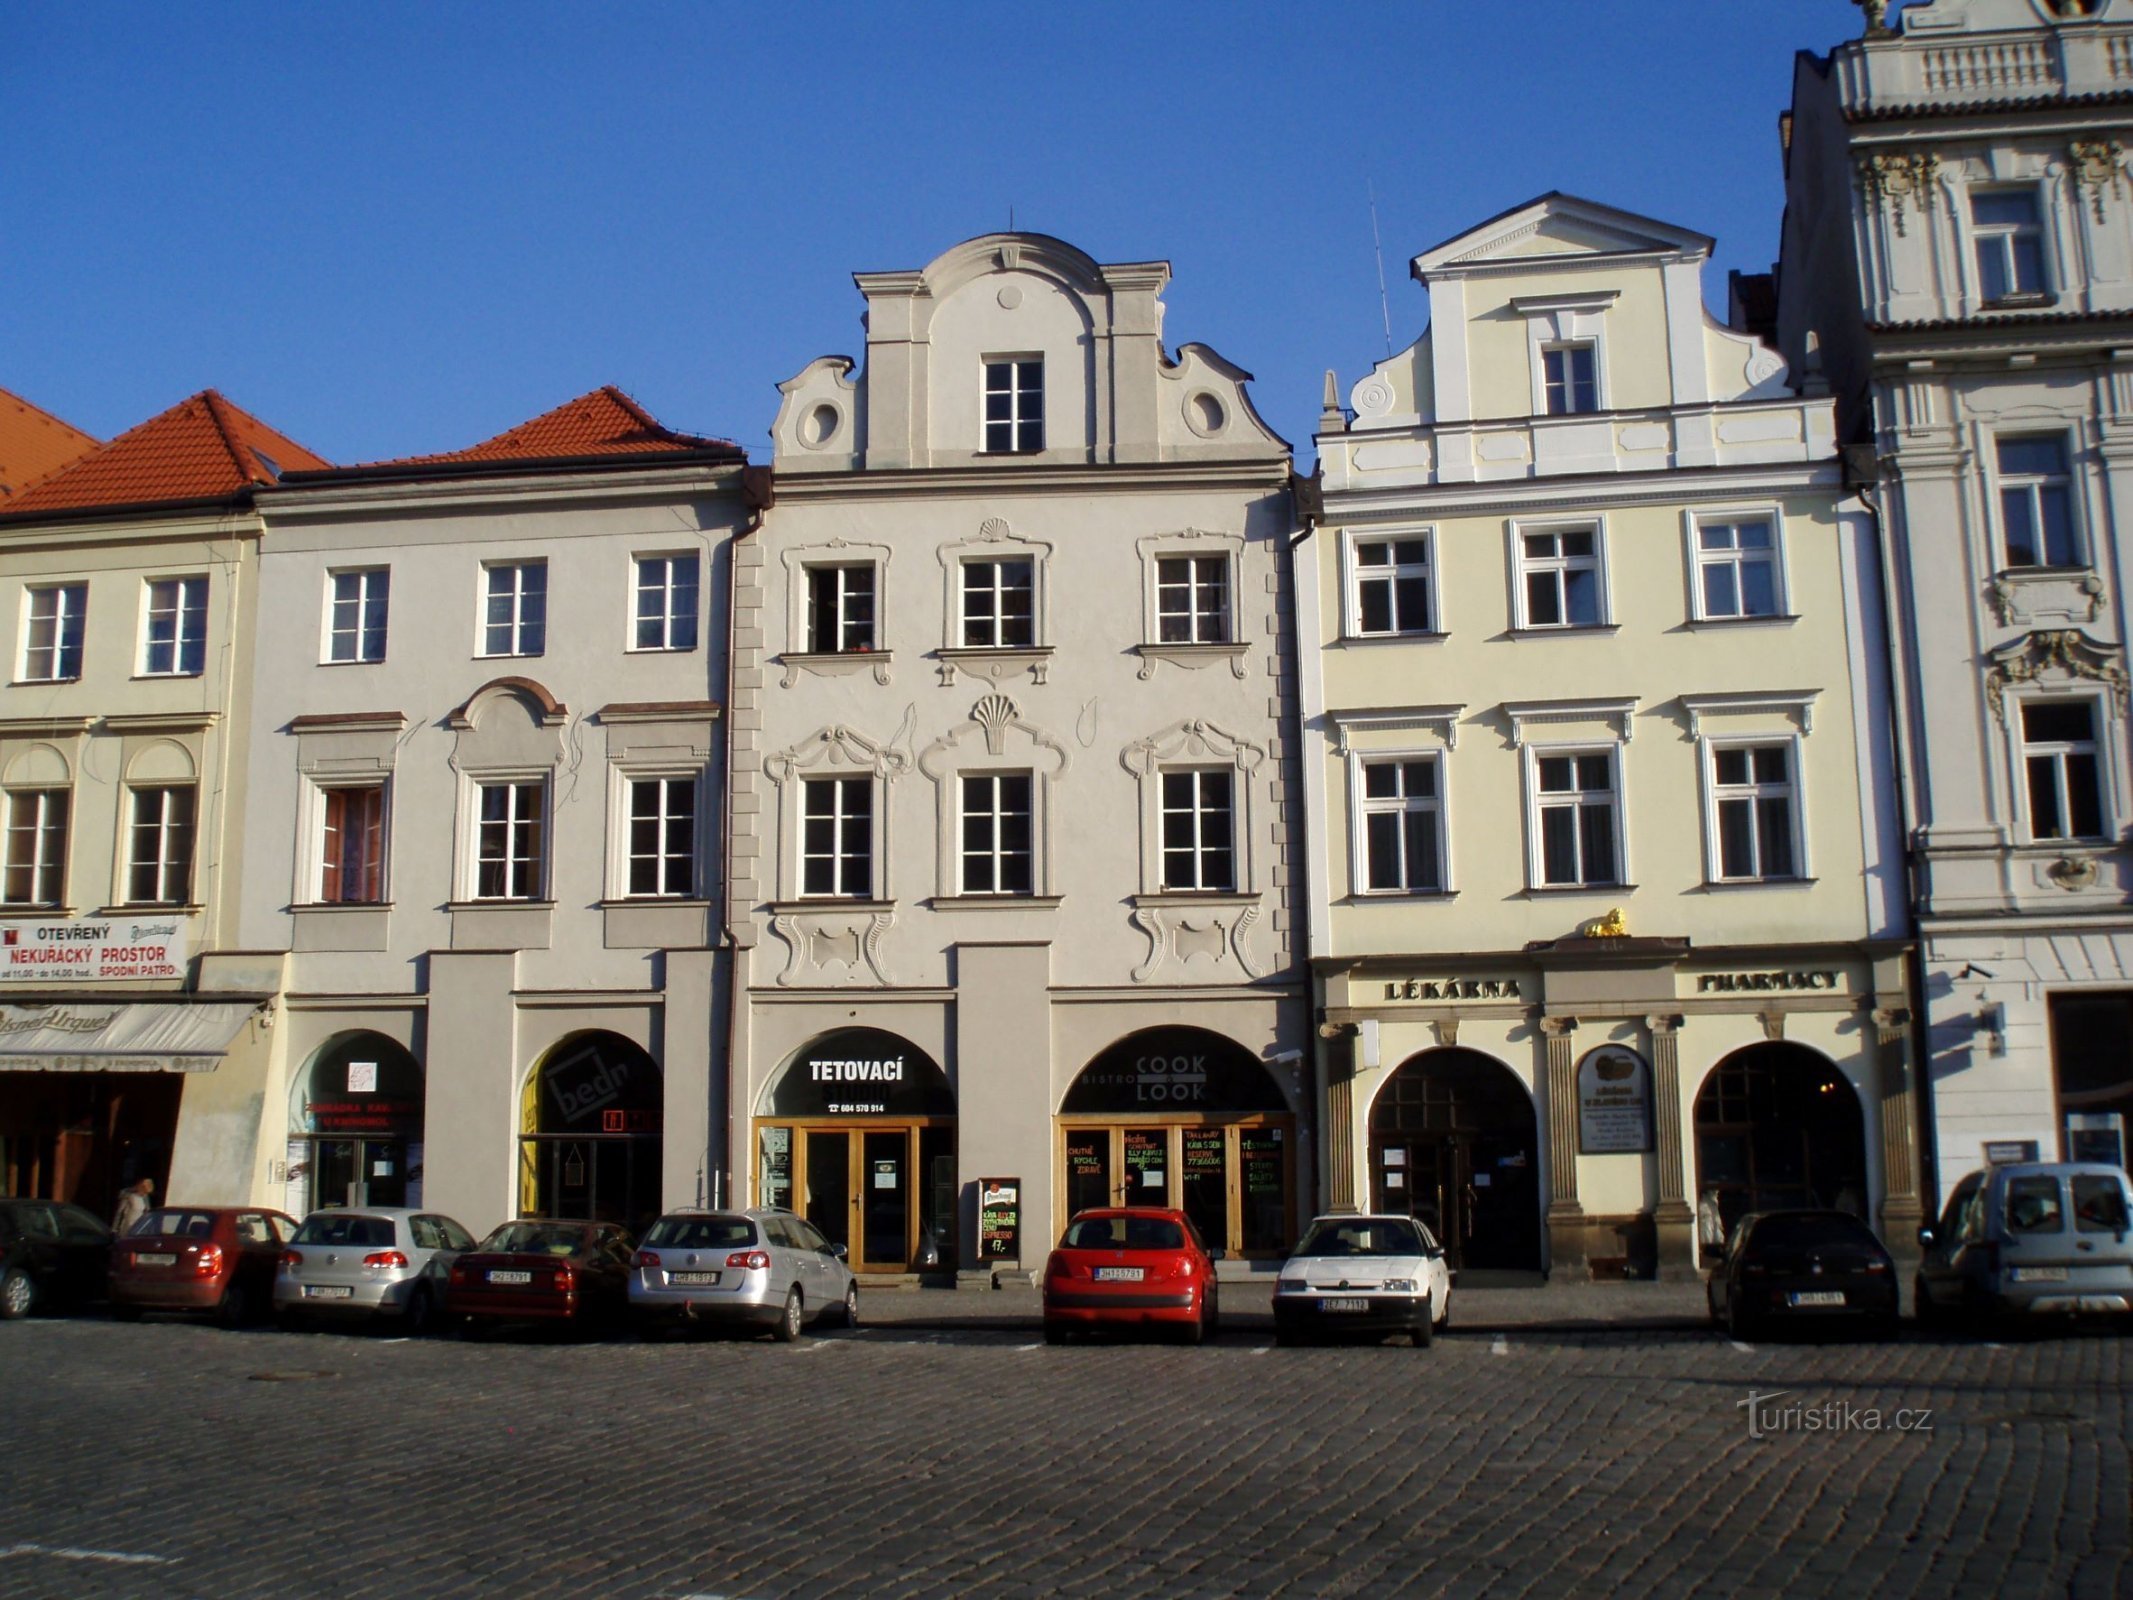 Velké náměstí čp. 27-29 (Hradec Králové, 9.4.2012)